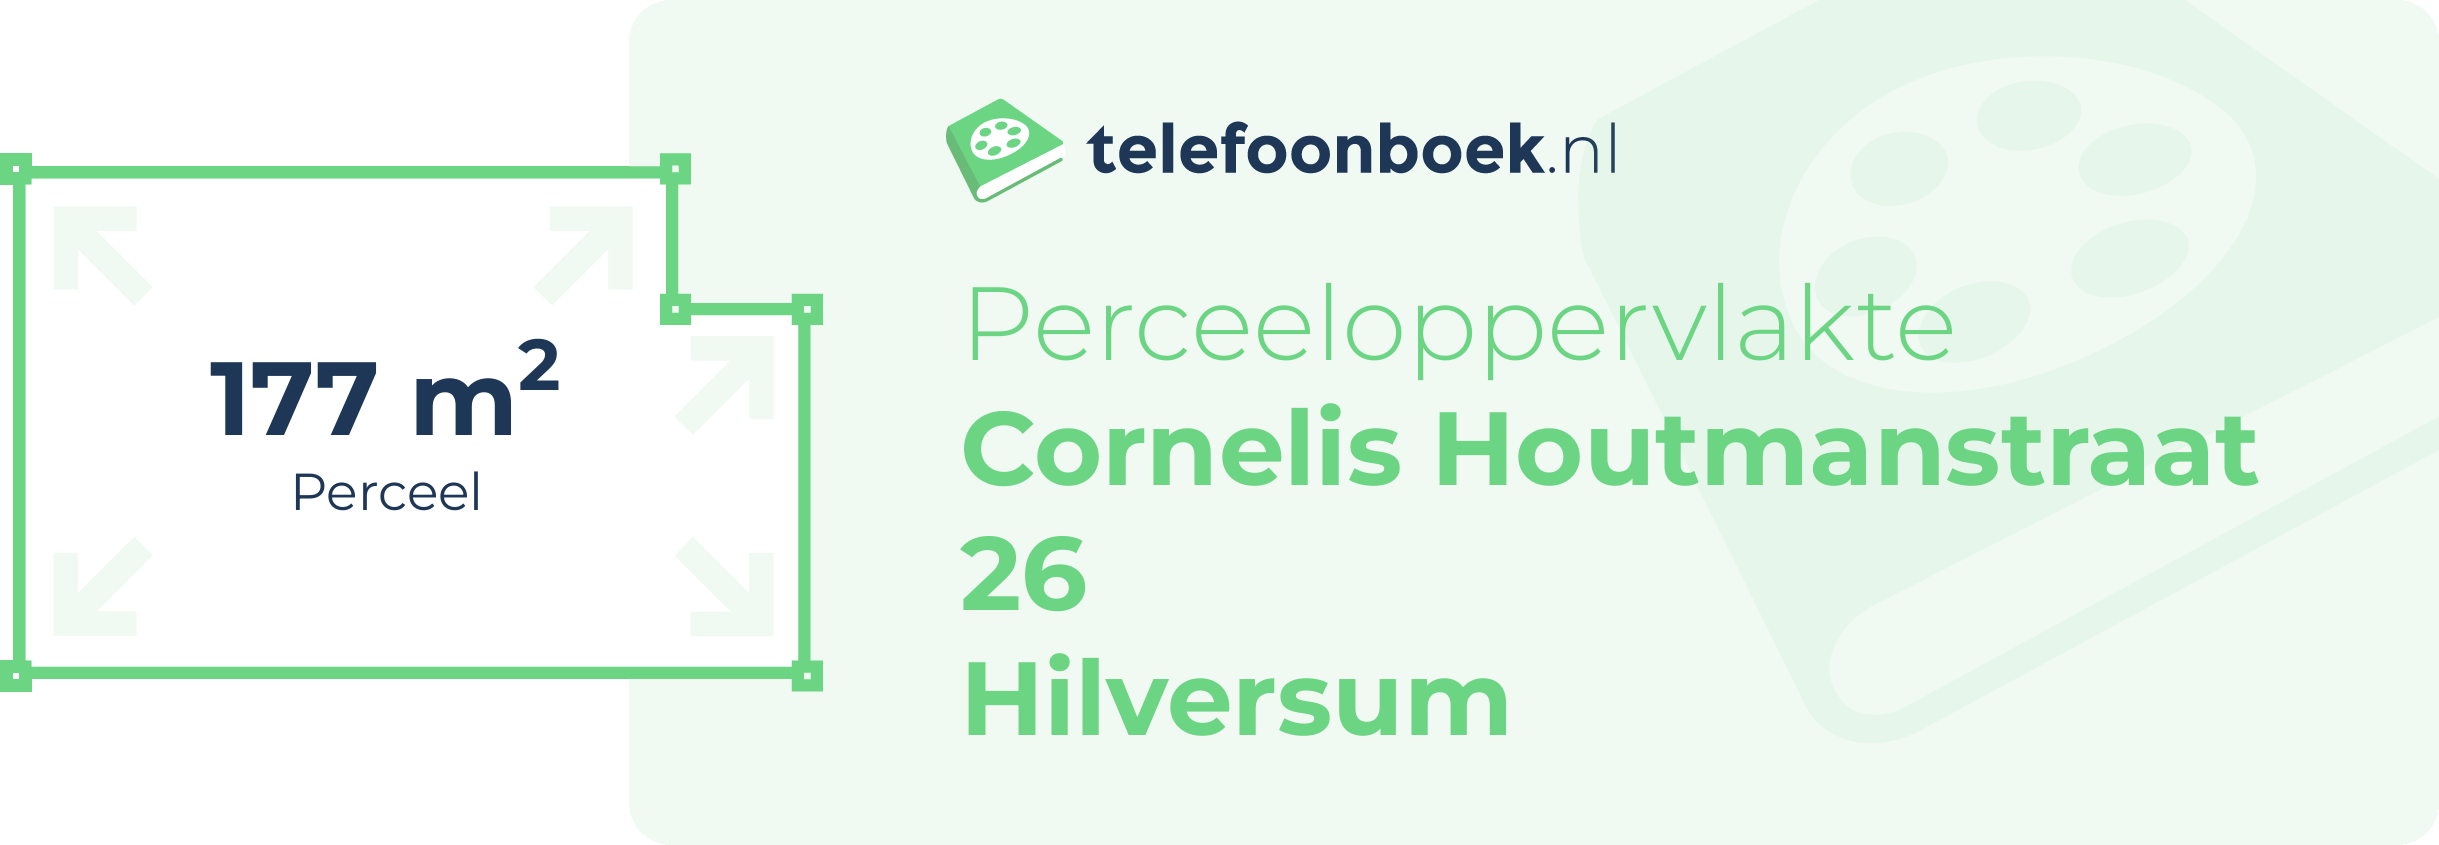 Perceeloppervlakte Cornelis Houtmanstraat 26 Hilversum